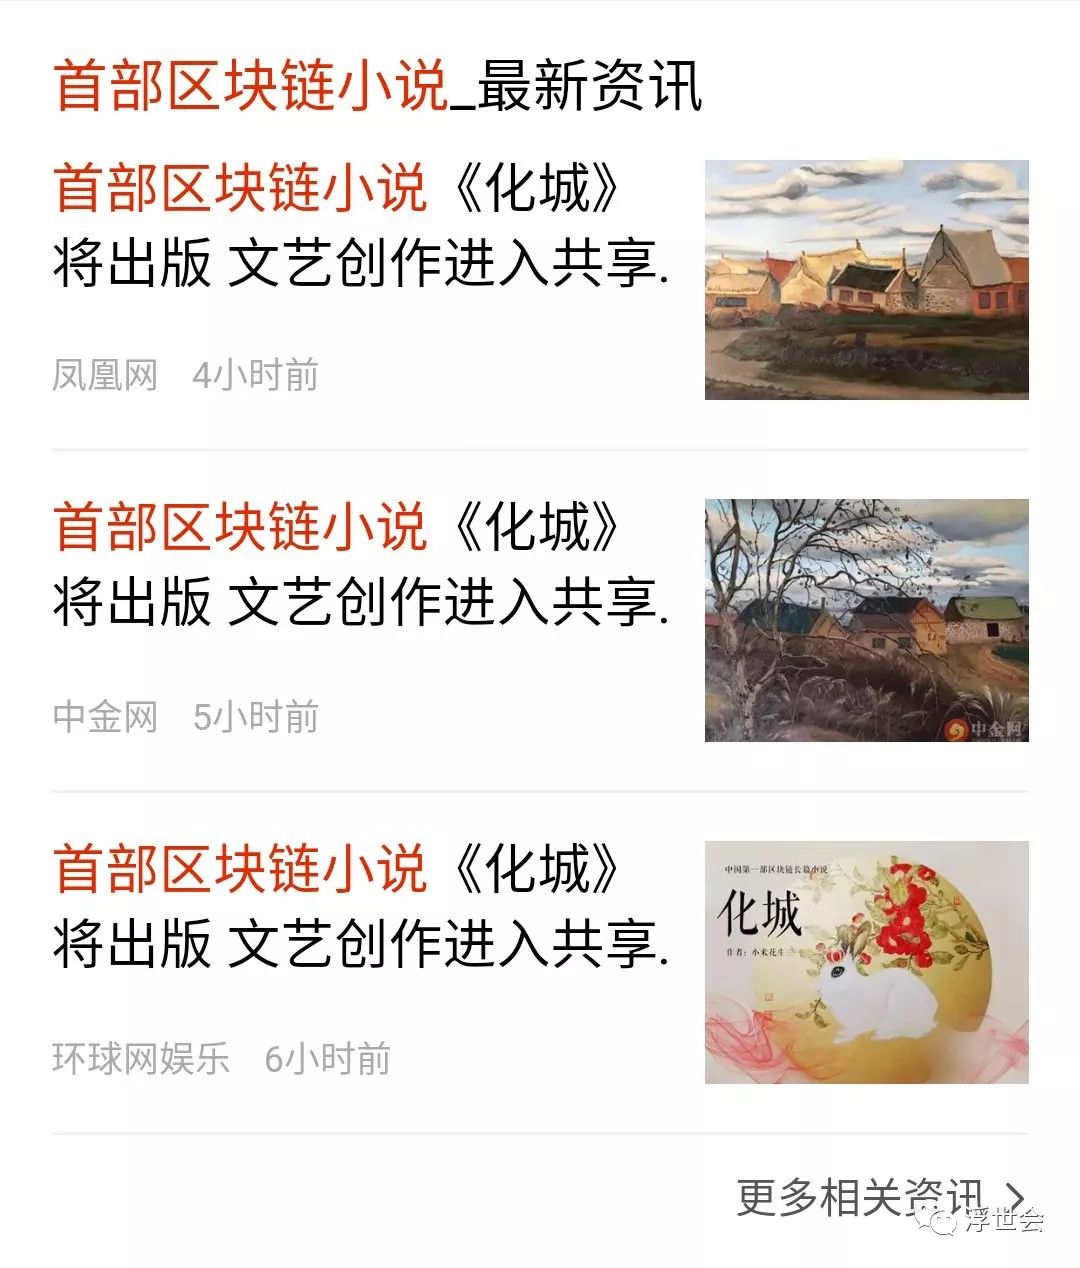 中国首部区块链小说《花城》将发表文学创作，进入共享时代